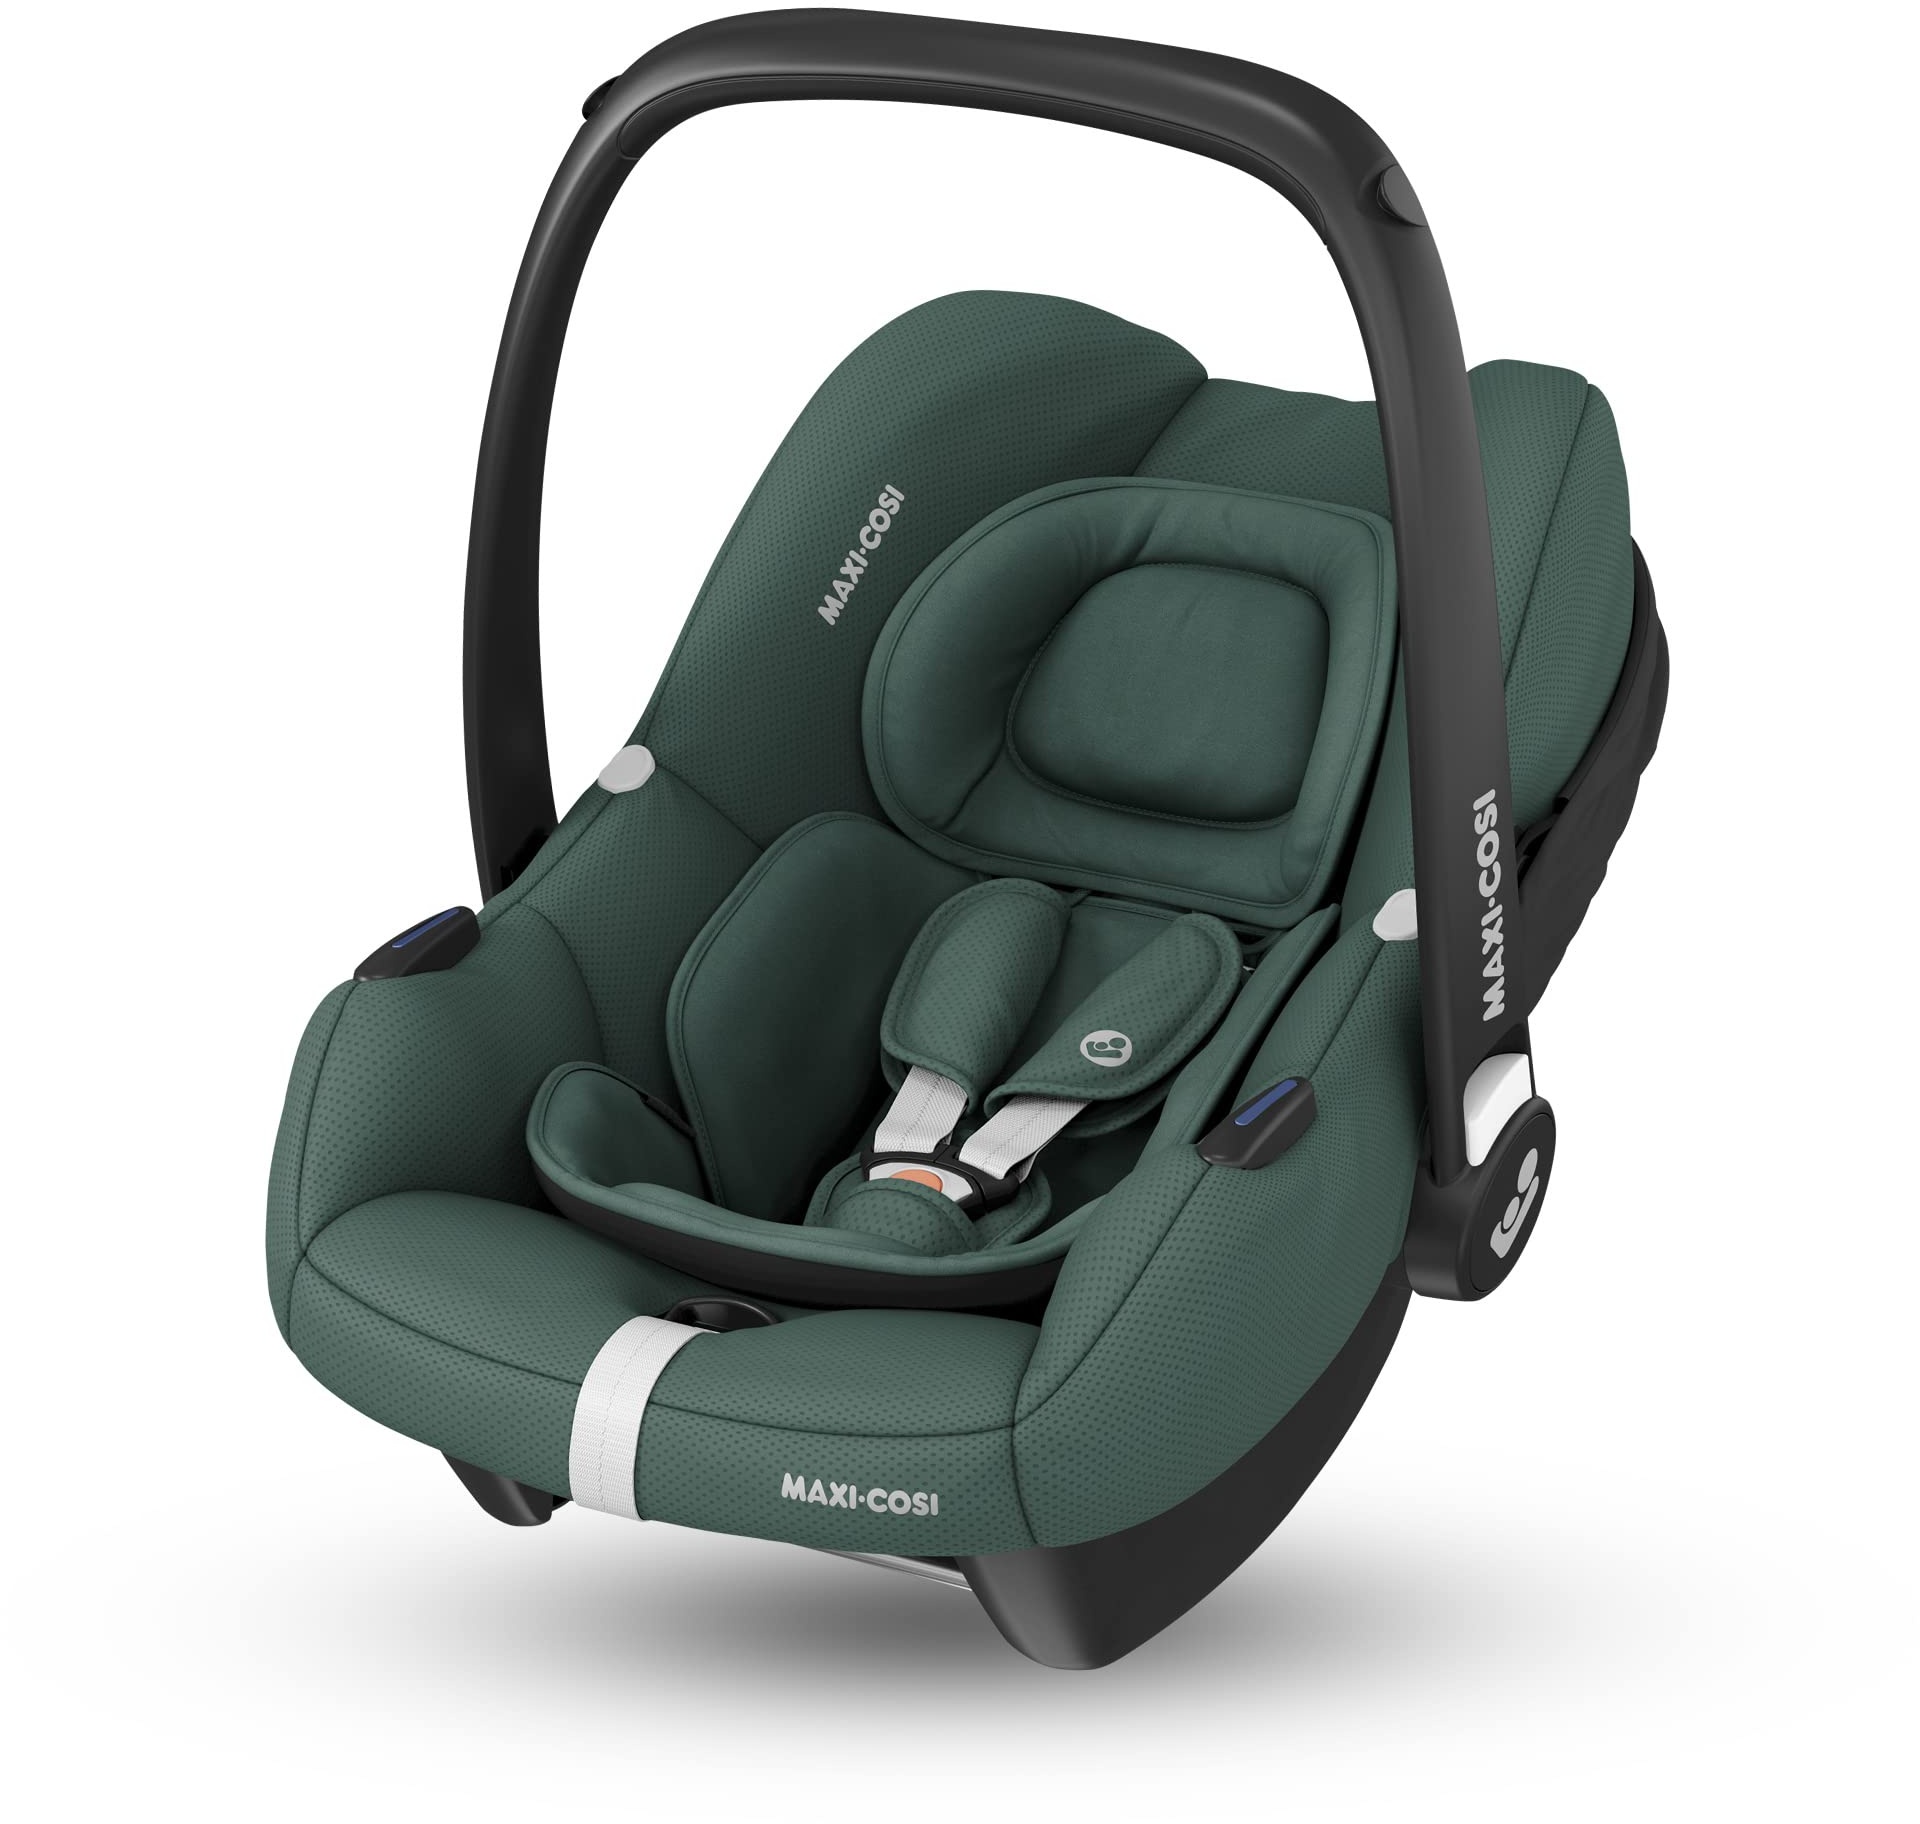 Maxi-Cosi CabrioFix i-Size, Babyschale, 0–12 Monate, max. 12 kg, leichter i-Size Kindersitz (3,2 kg), Sonnenverdeck, gepolsterter Sitz, für viele Maxi-Cosi Kinderwagen, Essential Green